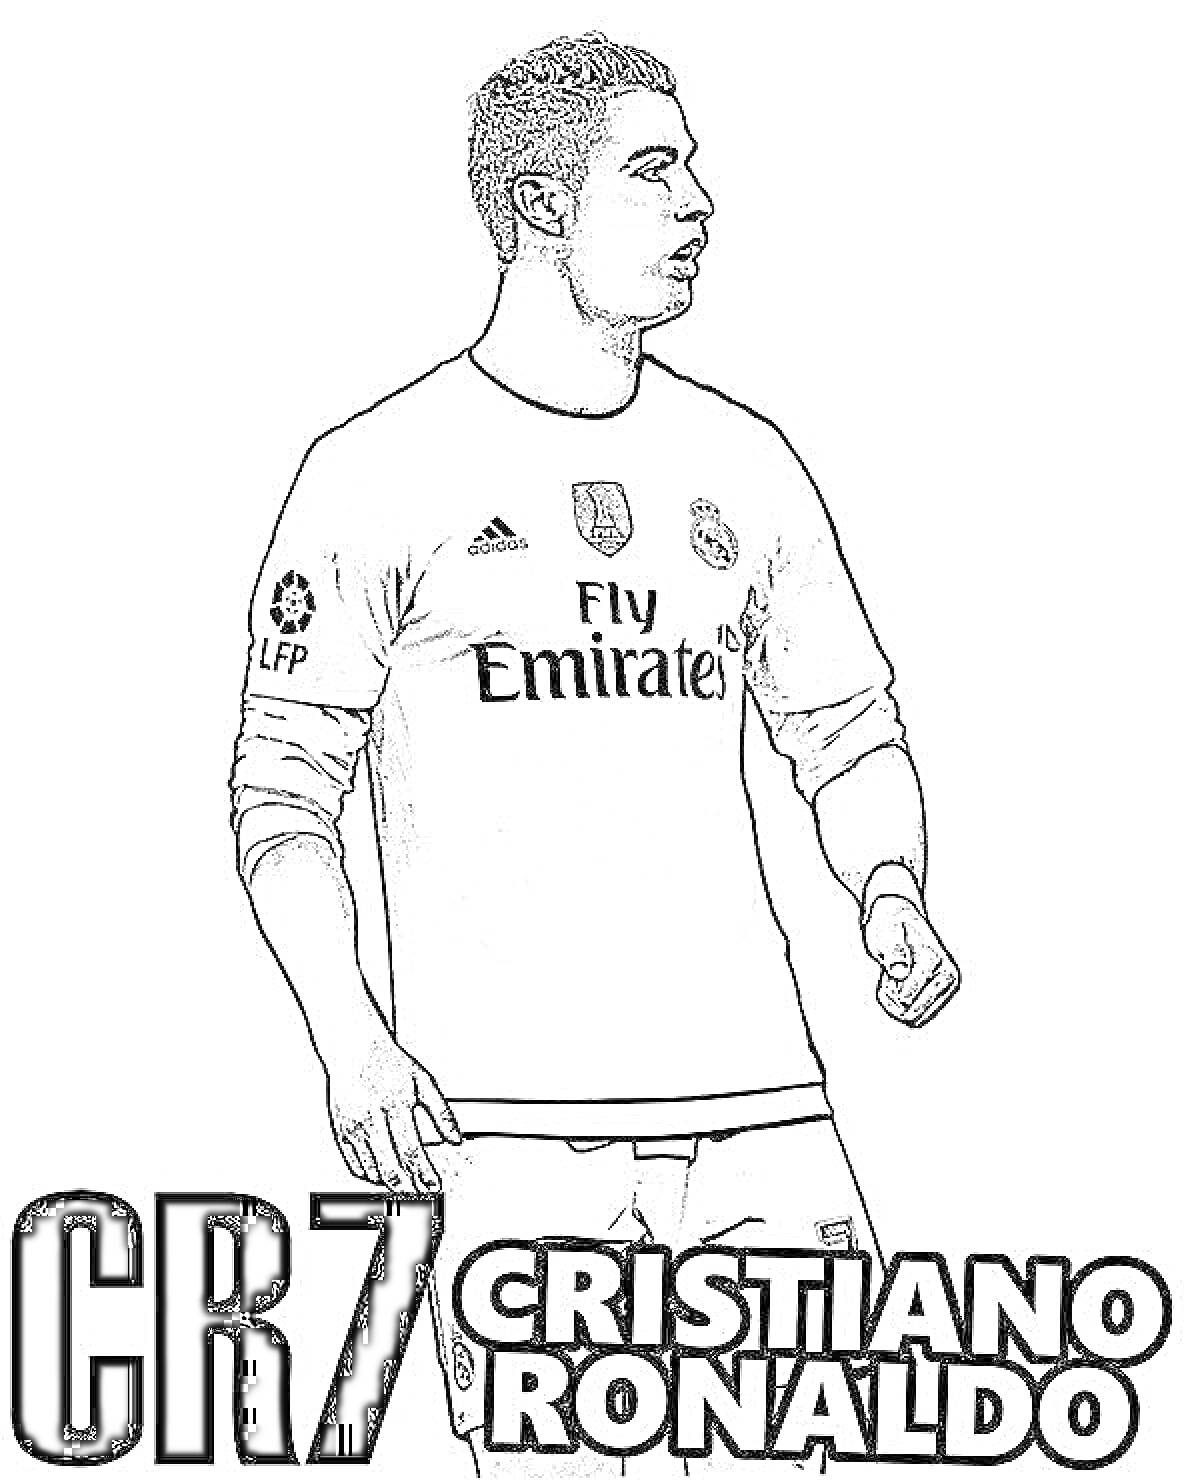 Криштиану Роналду в игровой форме с надписями CR7 и Cristiano Ronaldo